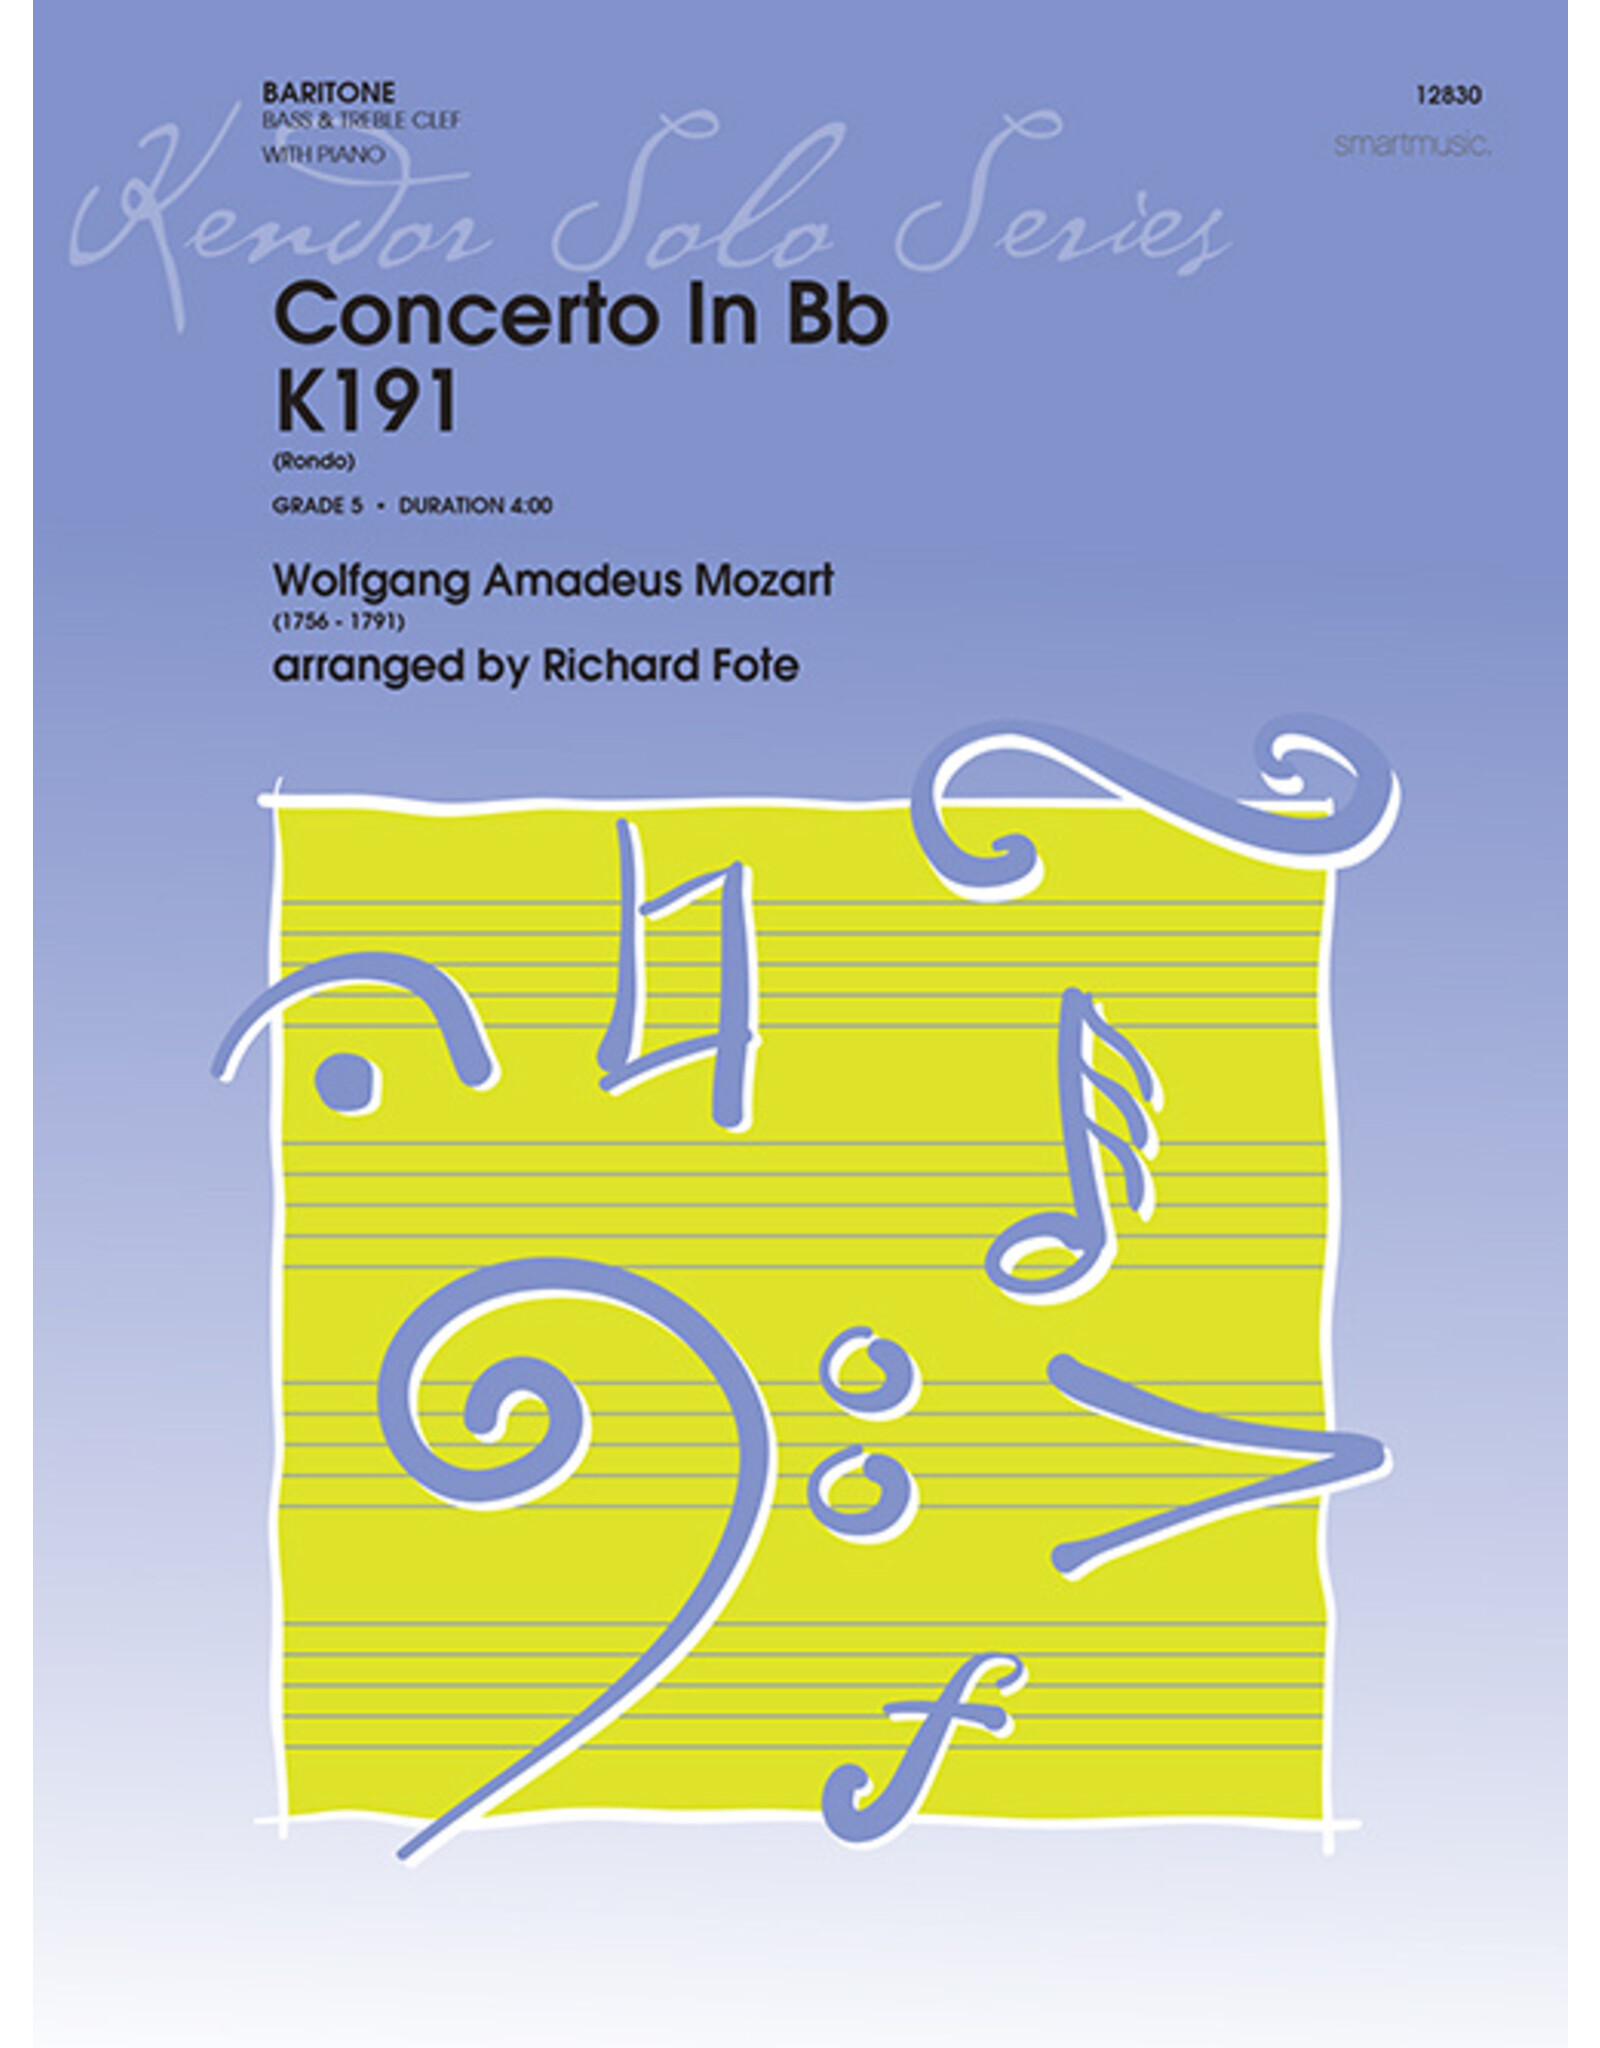 Kendor Mozart - Concerto in Bb k191 - Baritone